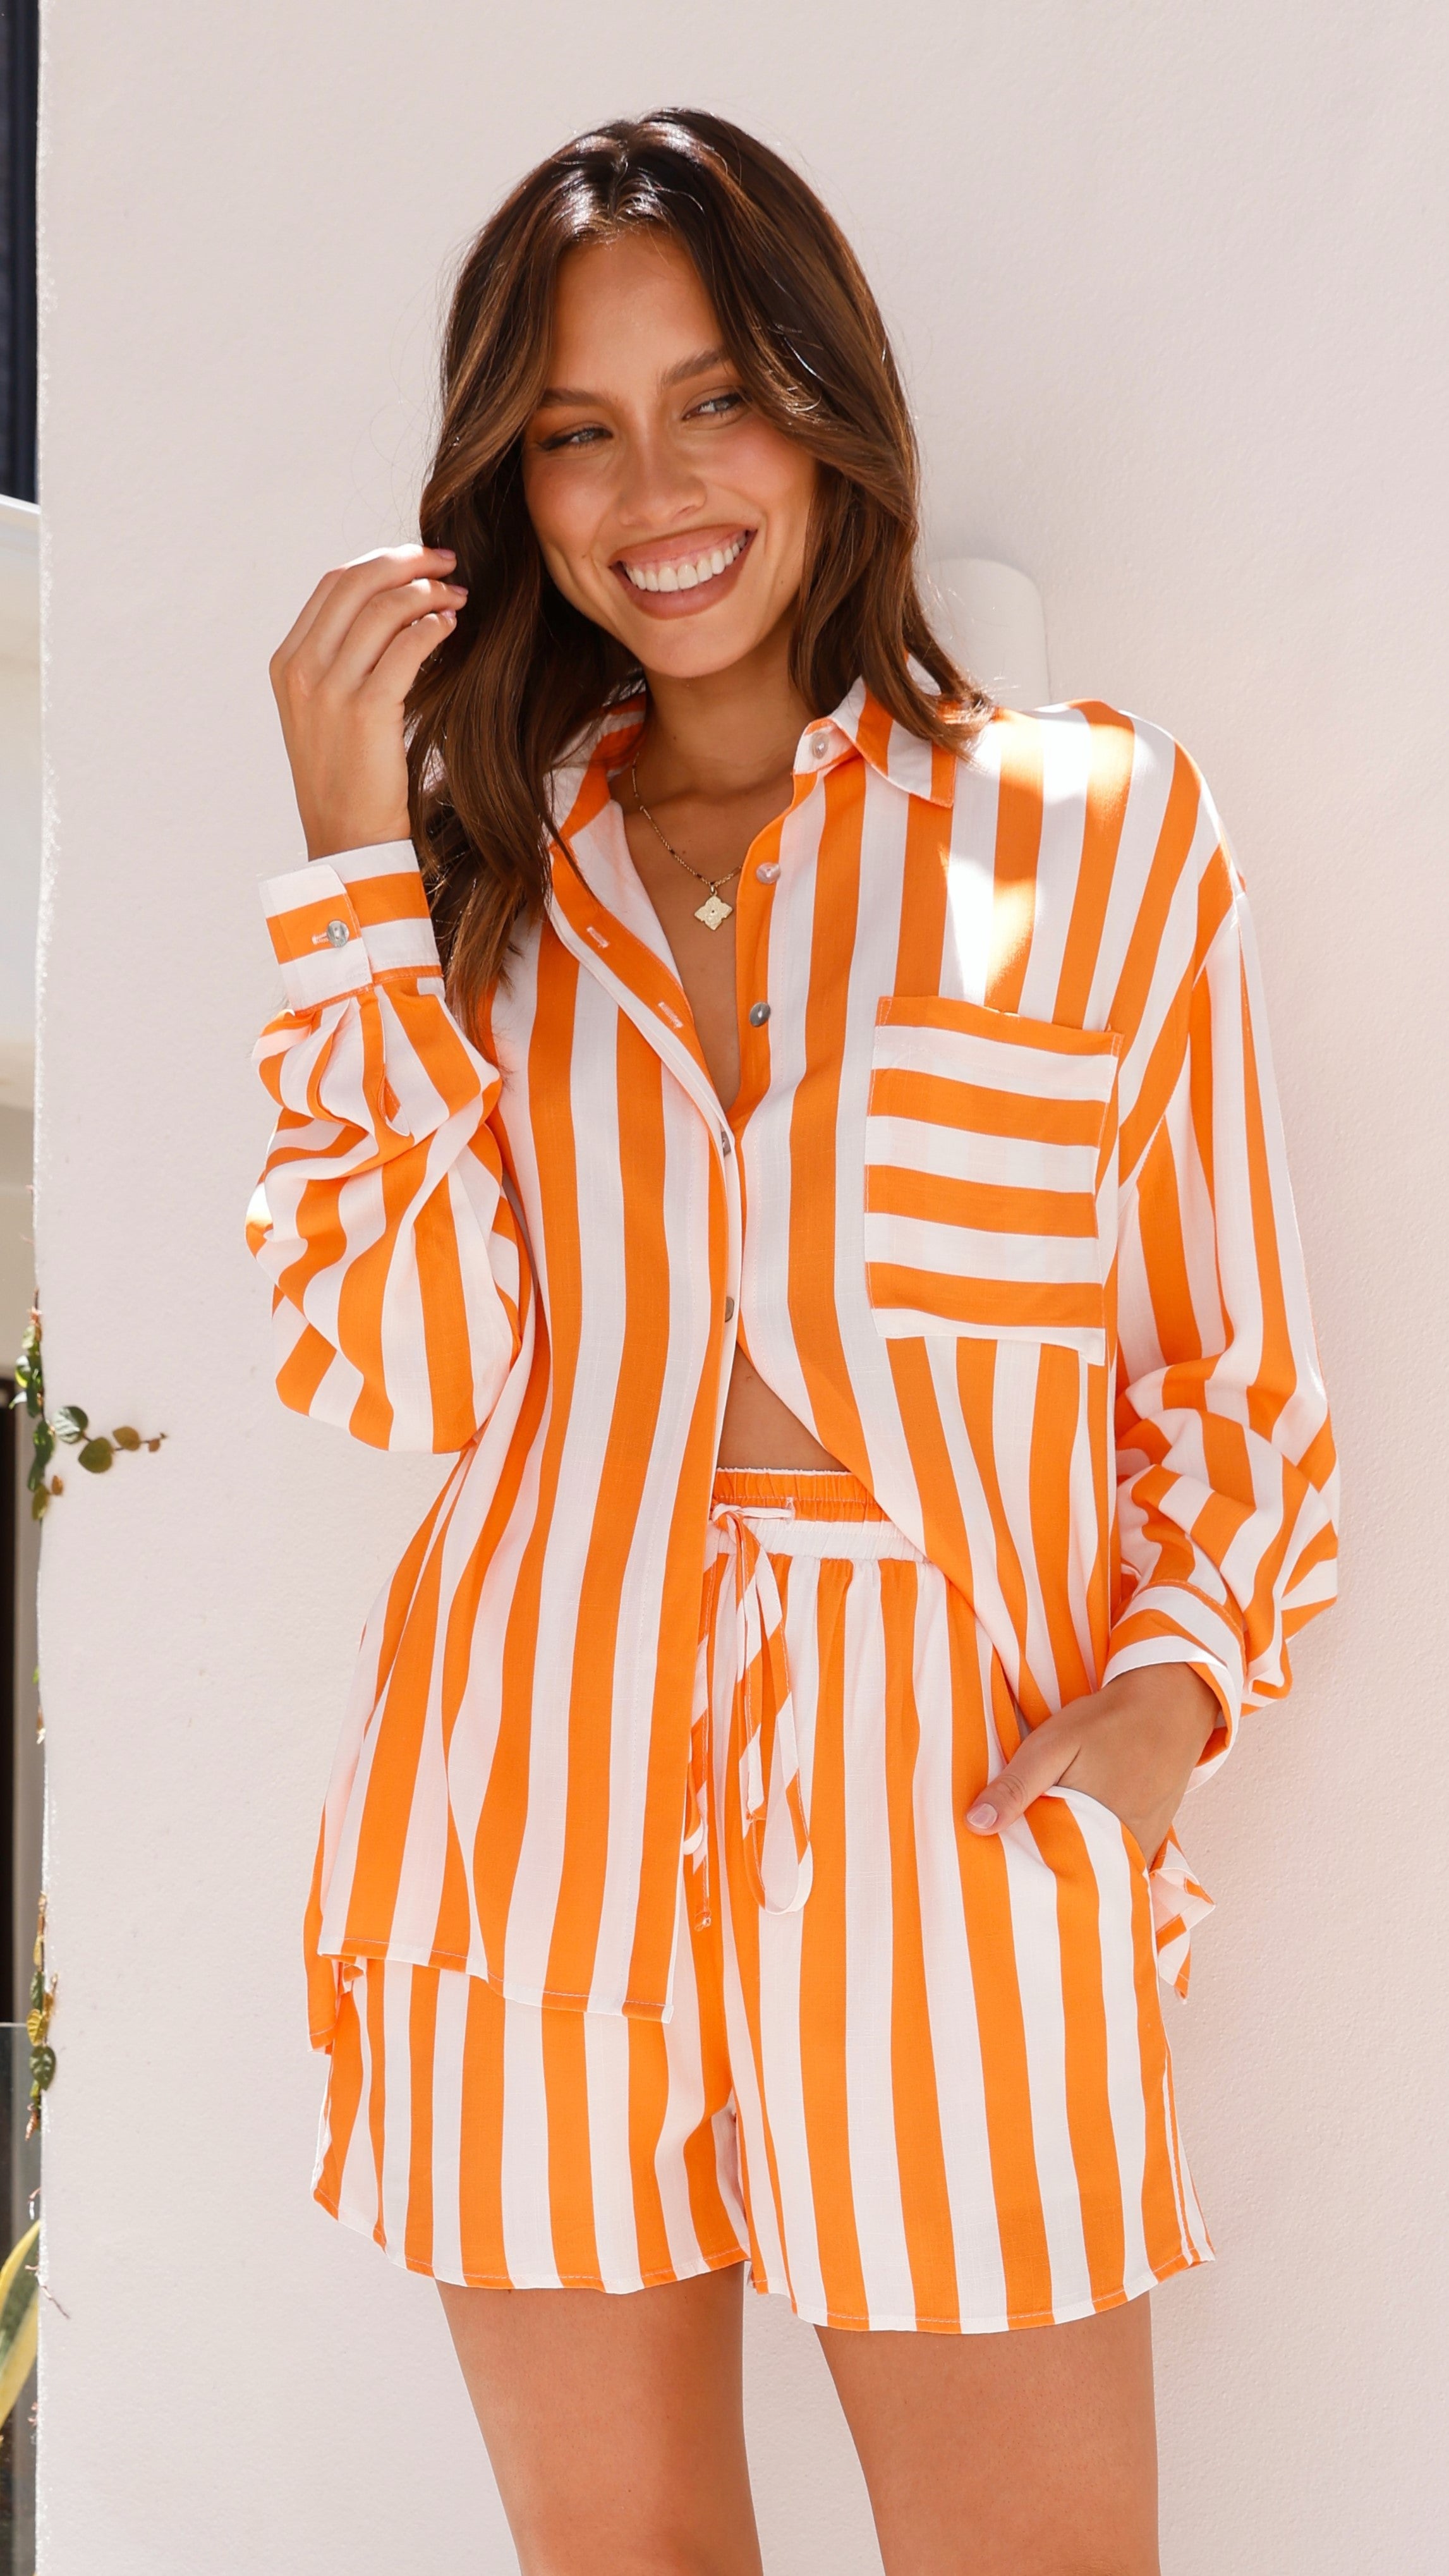 Capri Shirt - Orange/White